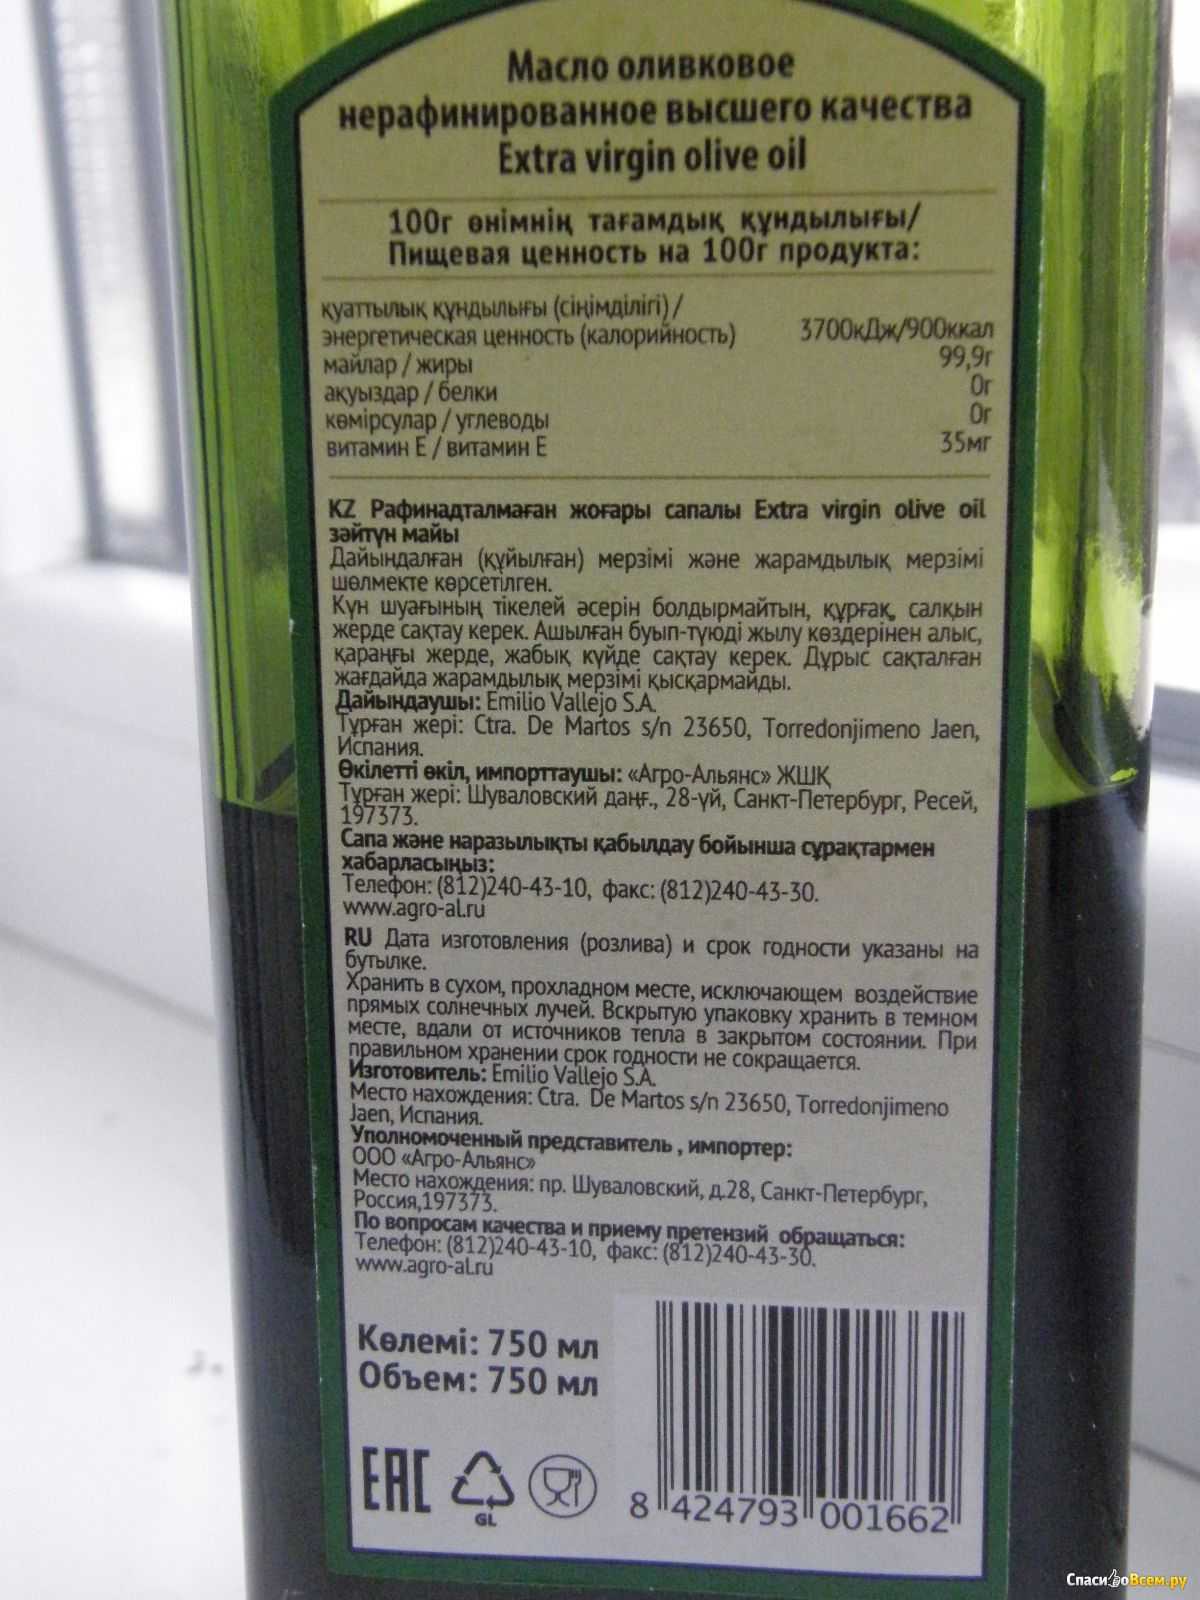 Для жарки лучше рафинированное или нерафинированное масло. Оливковое масло нерафинированное. Оливковое масло высшего качества. Оливковое масло показатели качества. Самое лучшее оливковое масло.